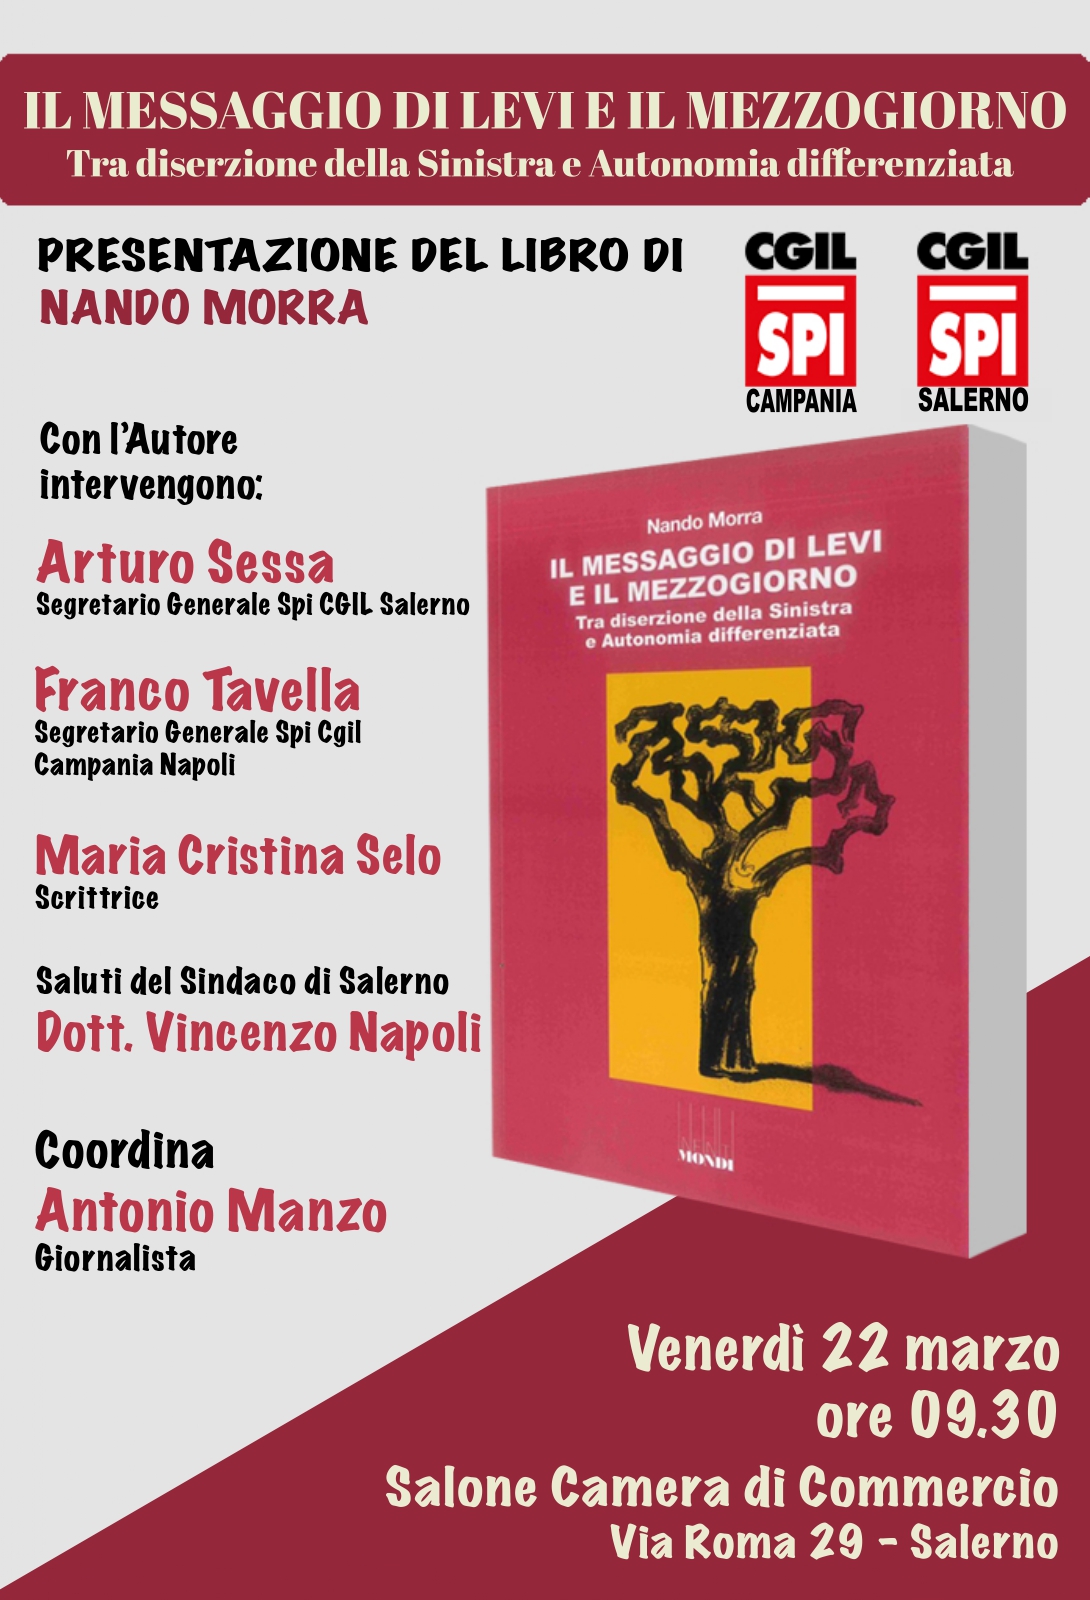 Salerno: Cgil, presentazione libro di Nando Morra “Il messaggio di Levi e il Mezzogiorno” 